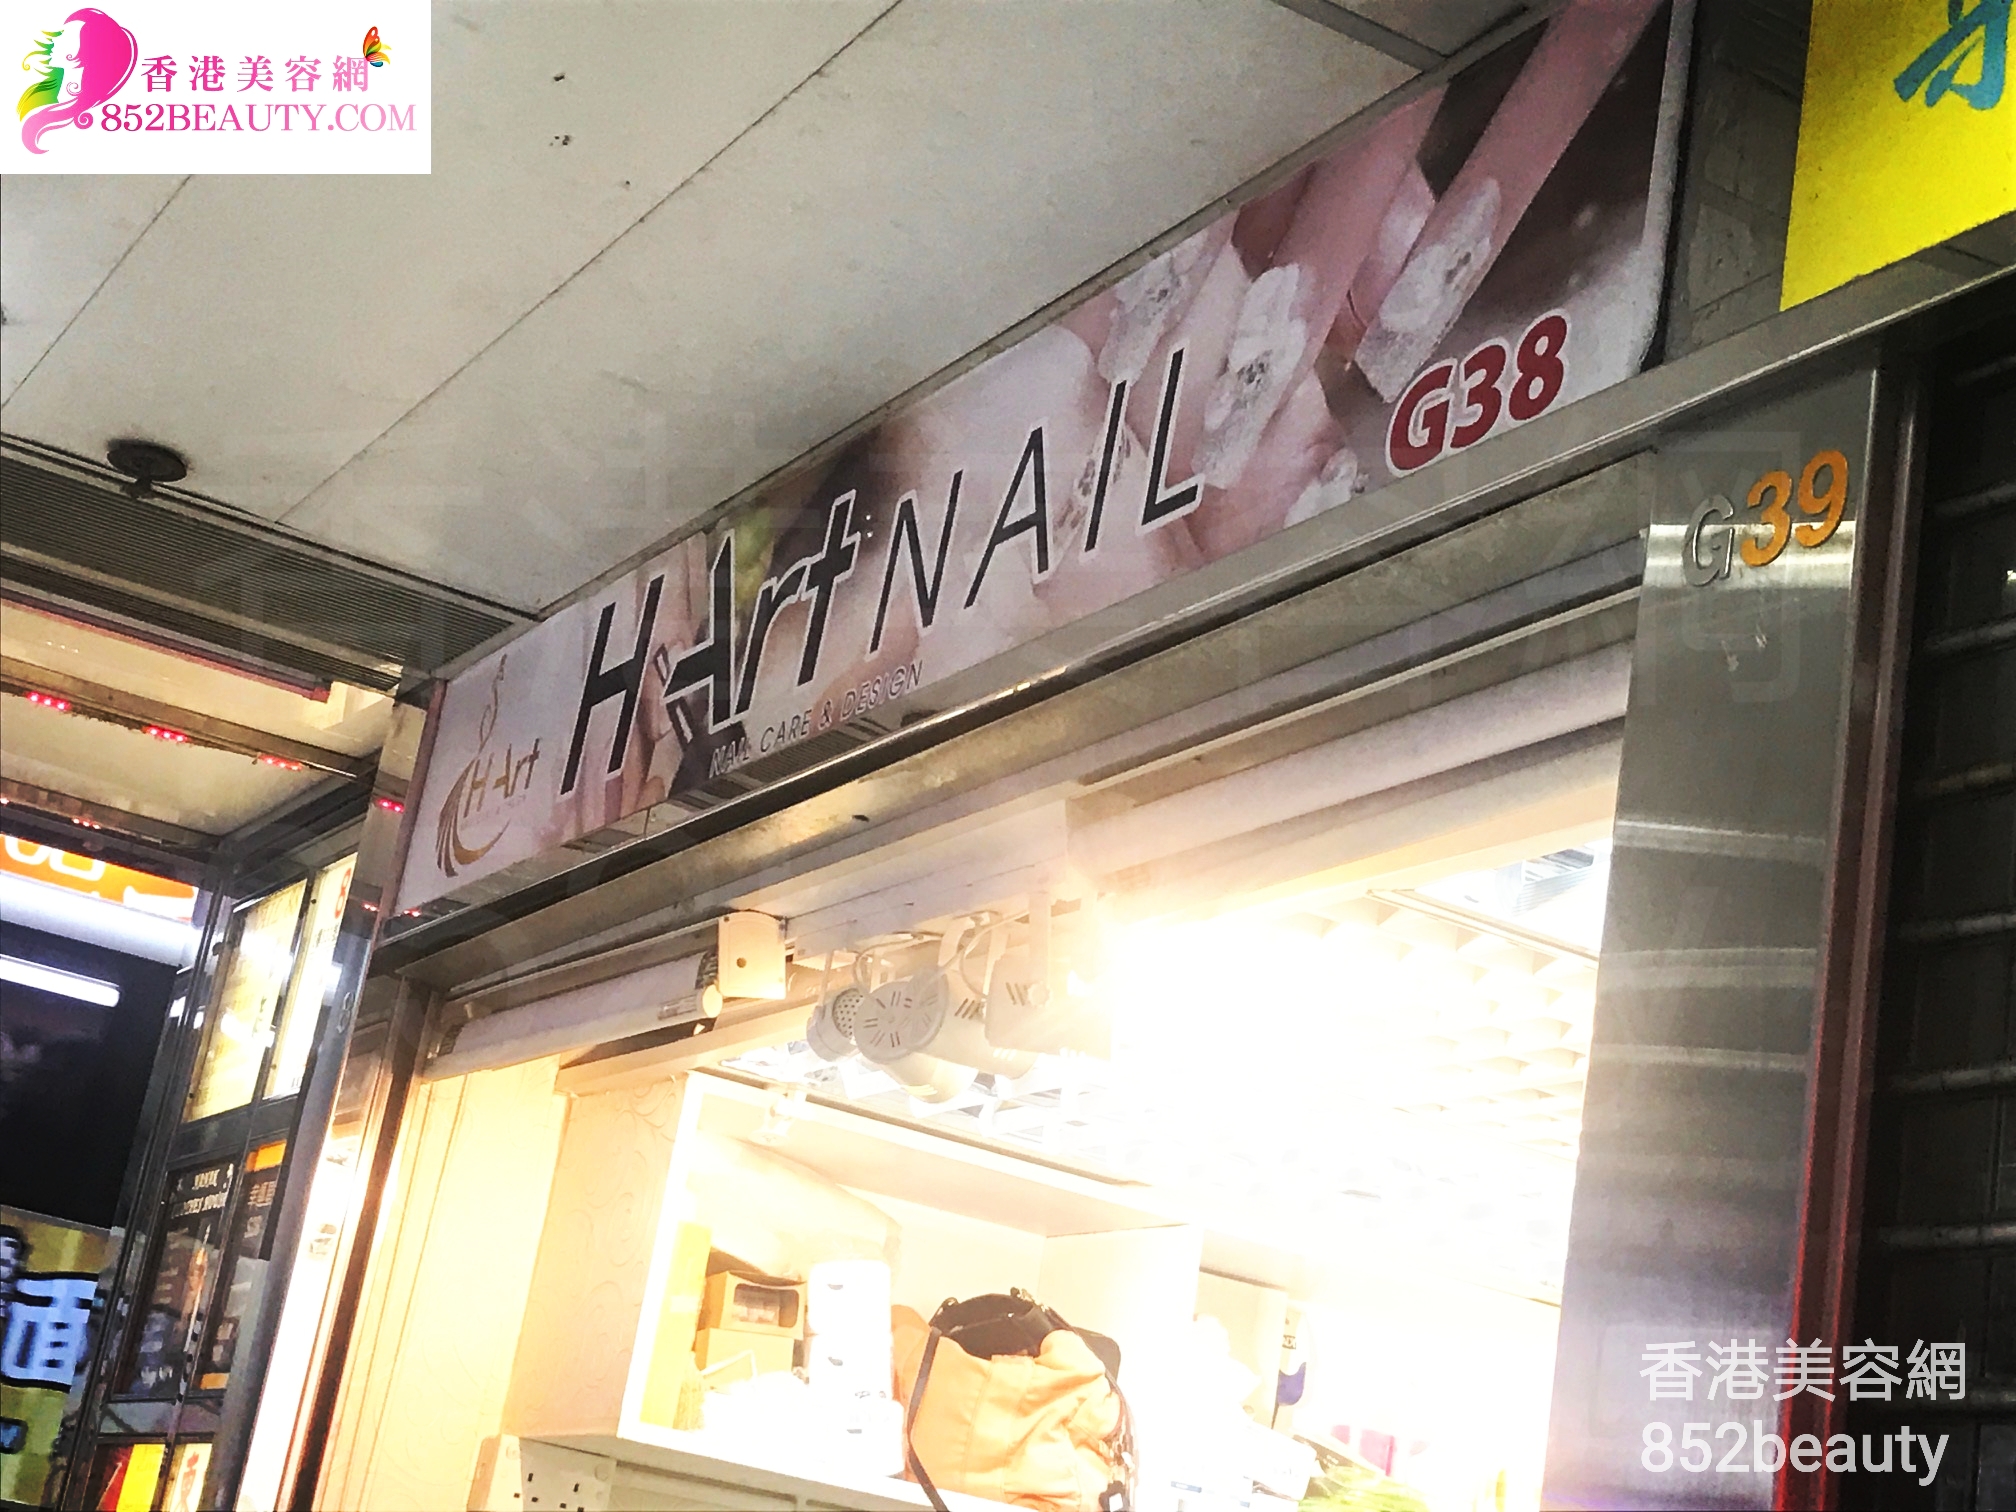 香港美容網 Hong Kong Beauty Salon 美容院 / 美容師: H Art NAIL